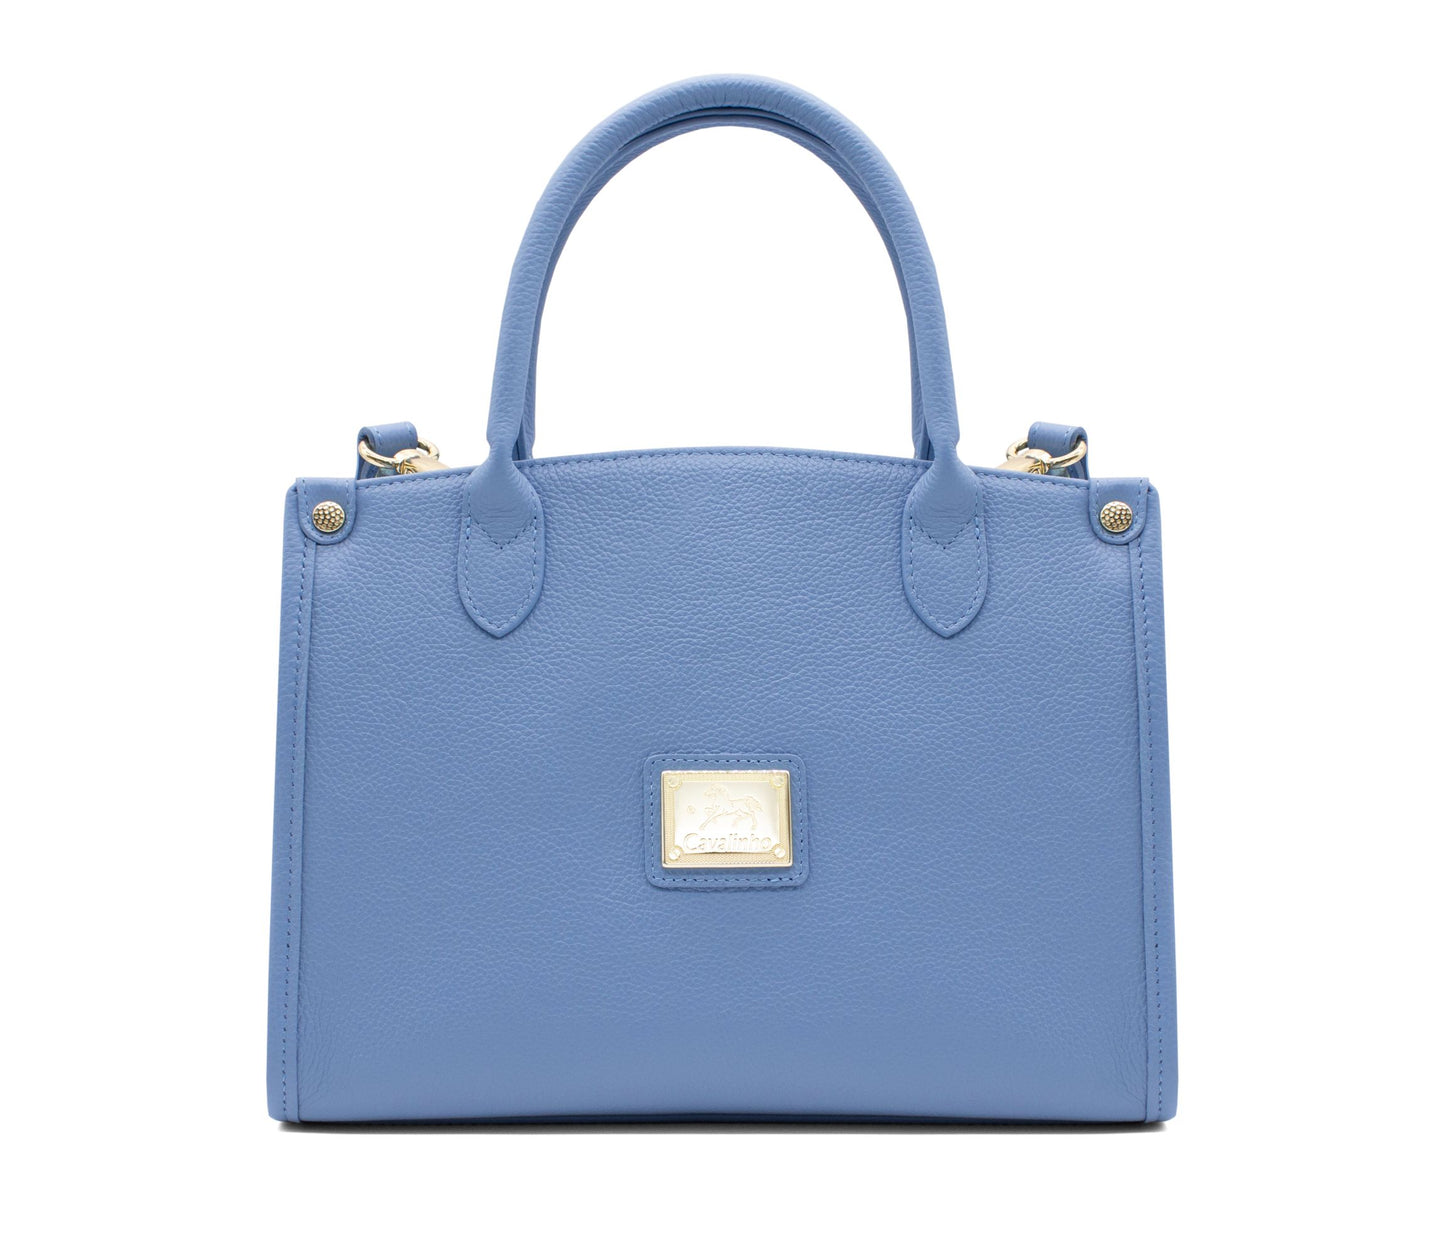 #color_ CornflowerBlue | Cavalinho Muse Leather Handbag - CornflowerBlue - 18300480.10_1